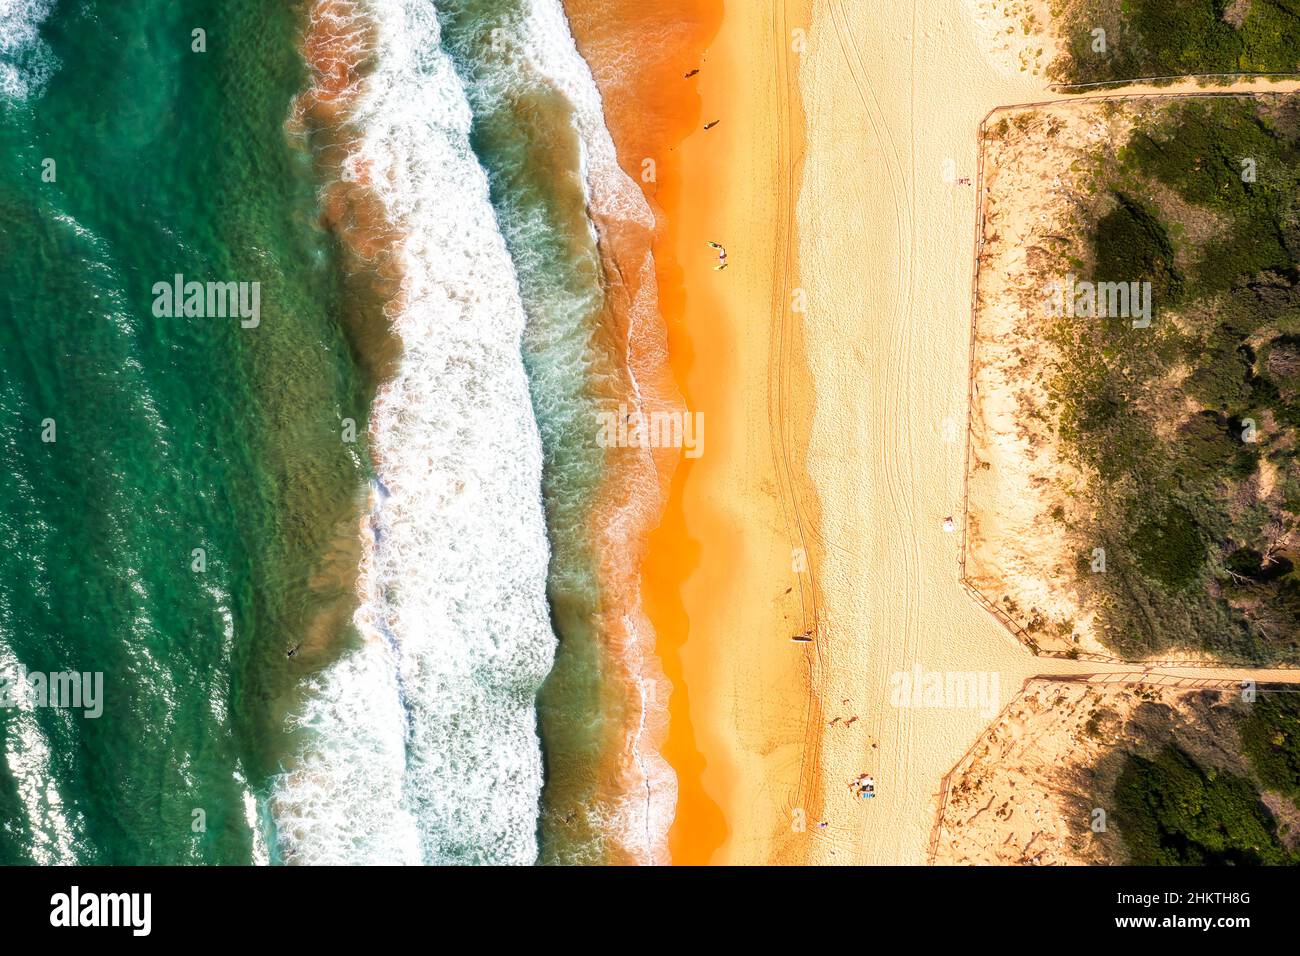 Sauberer sandiger Curl Curl-Strand mit Dünen und Naturschutzgebiet an den nördlichen Stränden der Pazifikküste von Sydney. Stockfoto